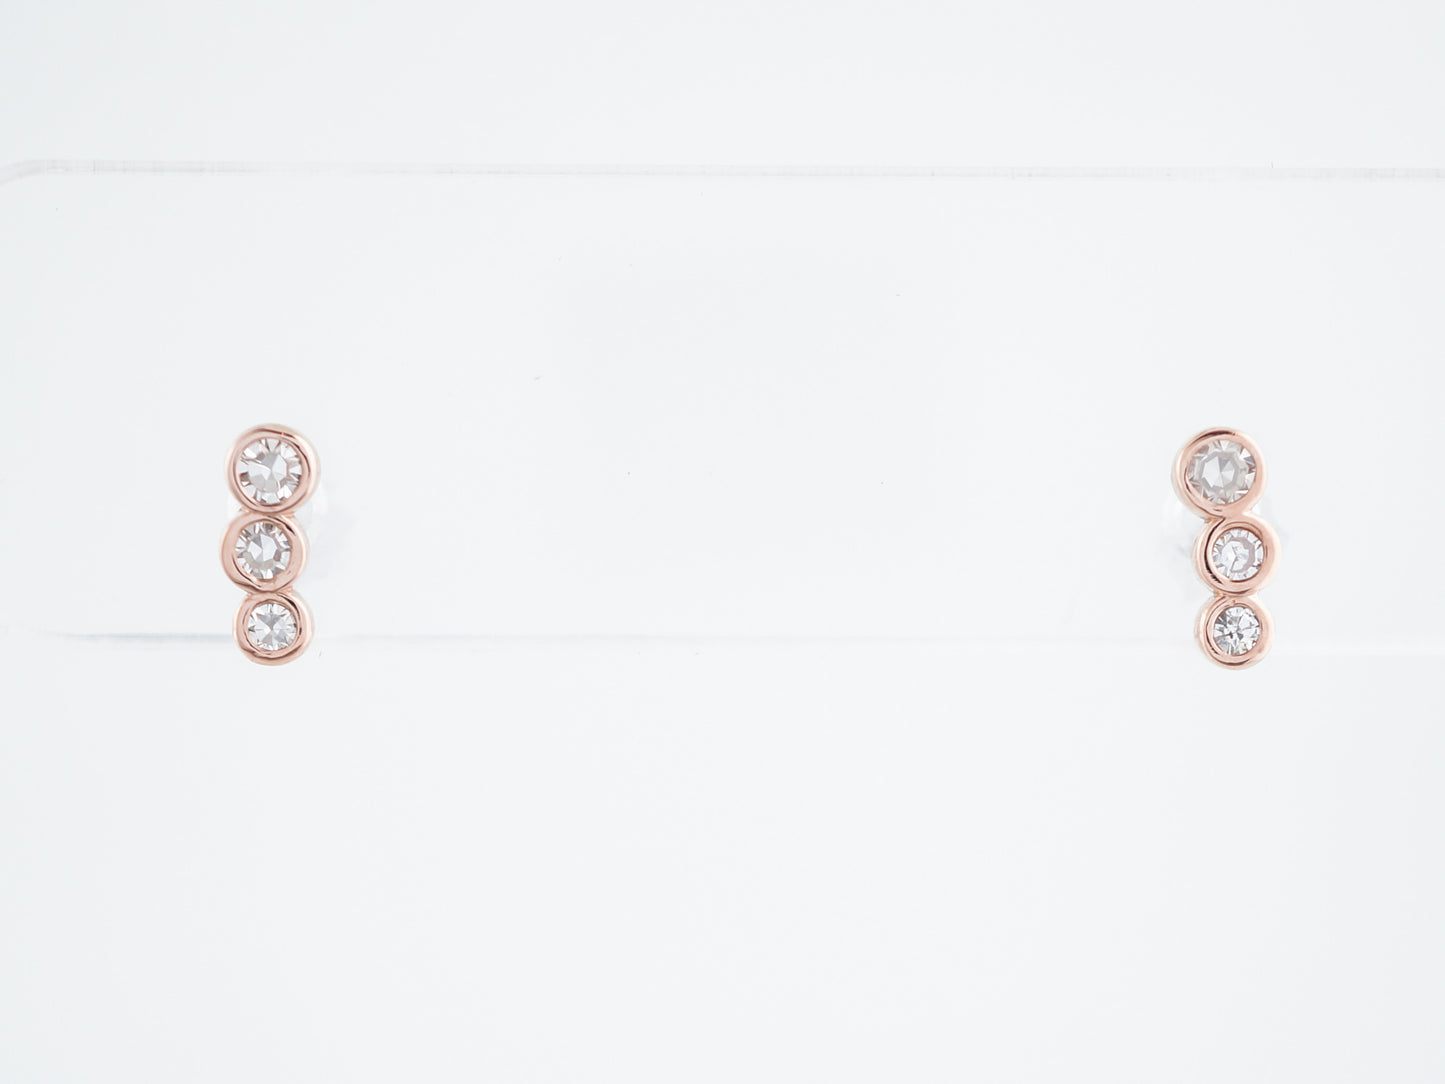 Climber Earrings Modern .14 Single Cut Diamonds in 14K Rose Gold